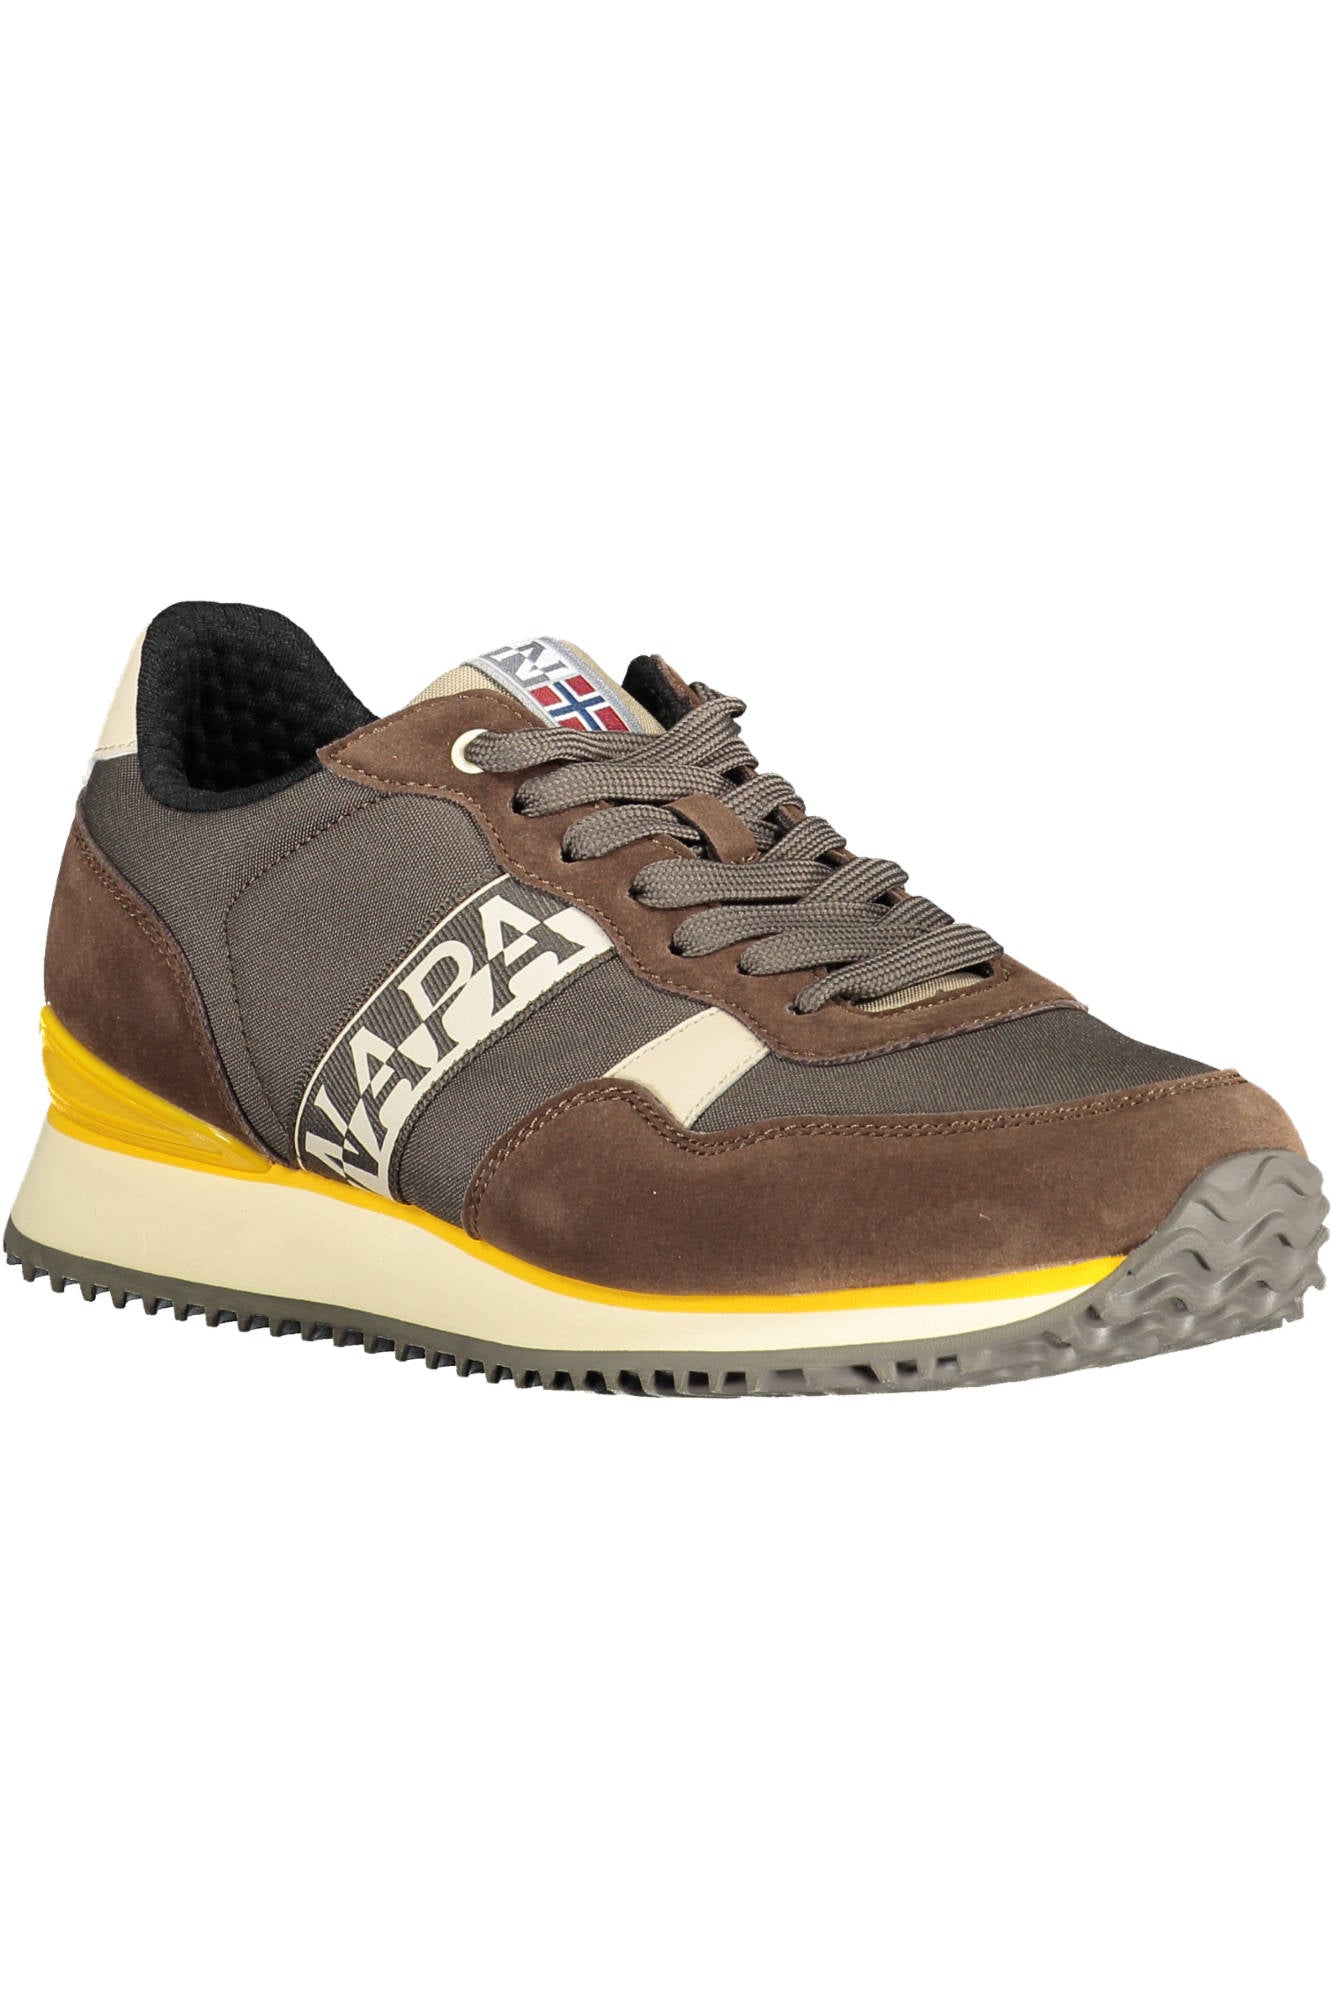 Napapijri Brown Sneakers - Fizigo